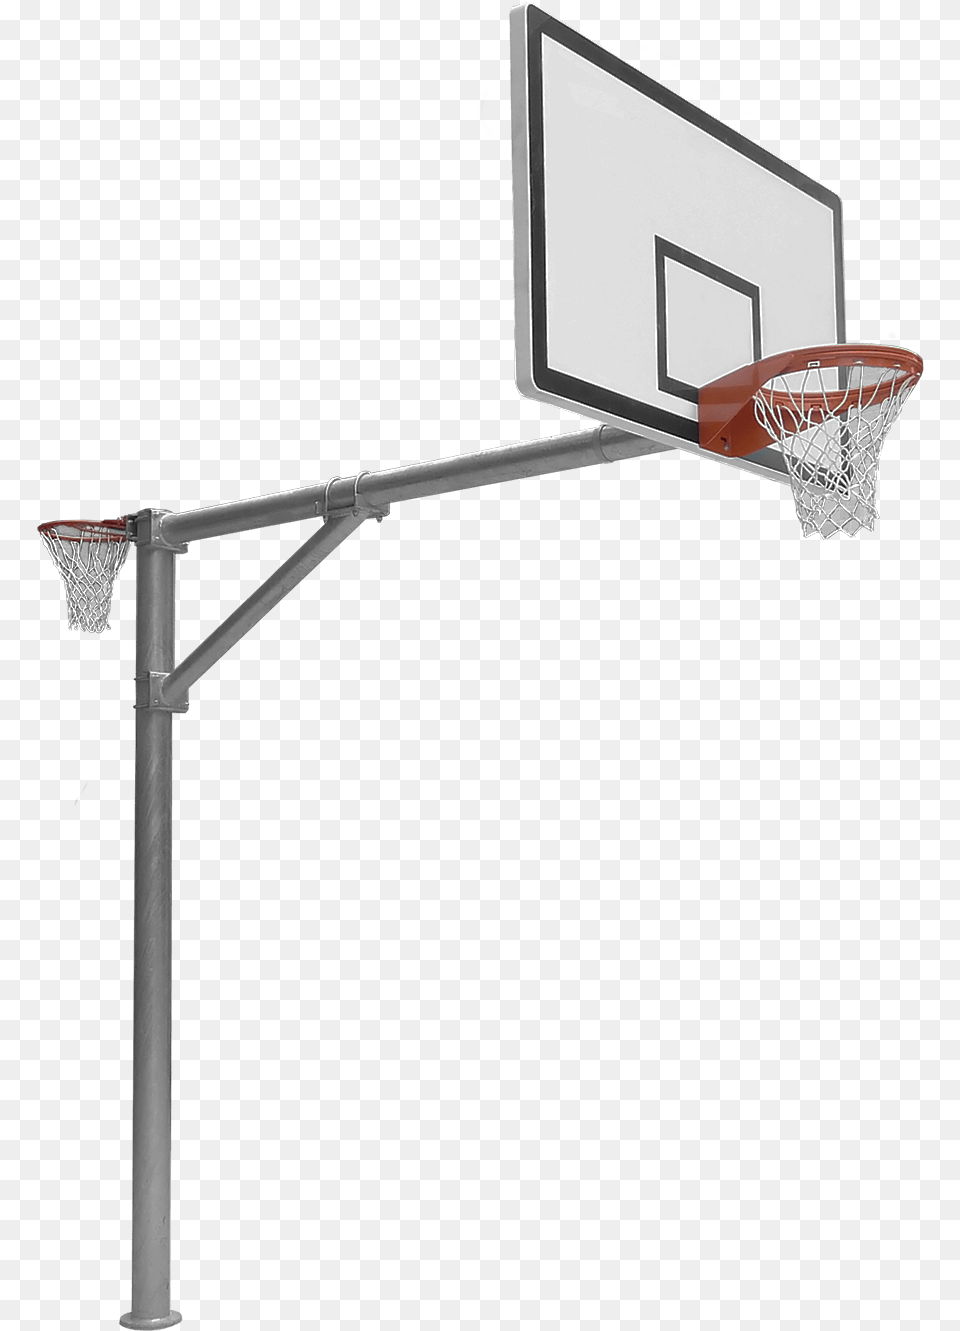 Heavy Duty Reversible Basketballnetball Rma Sport Basketball And Netball Hoop Png